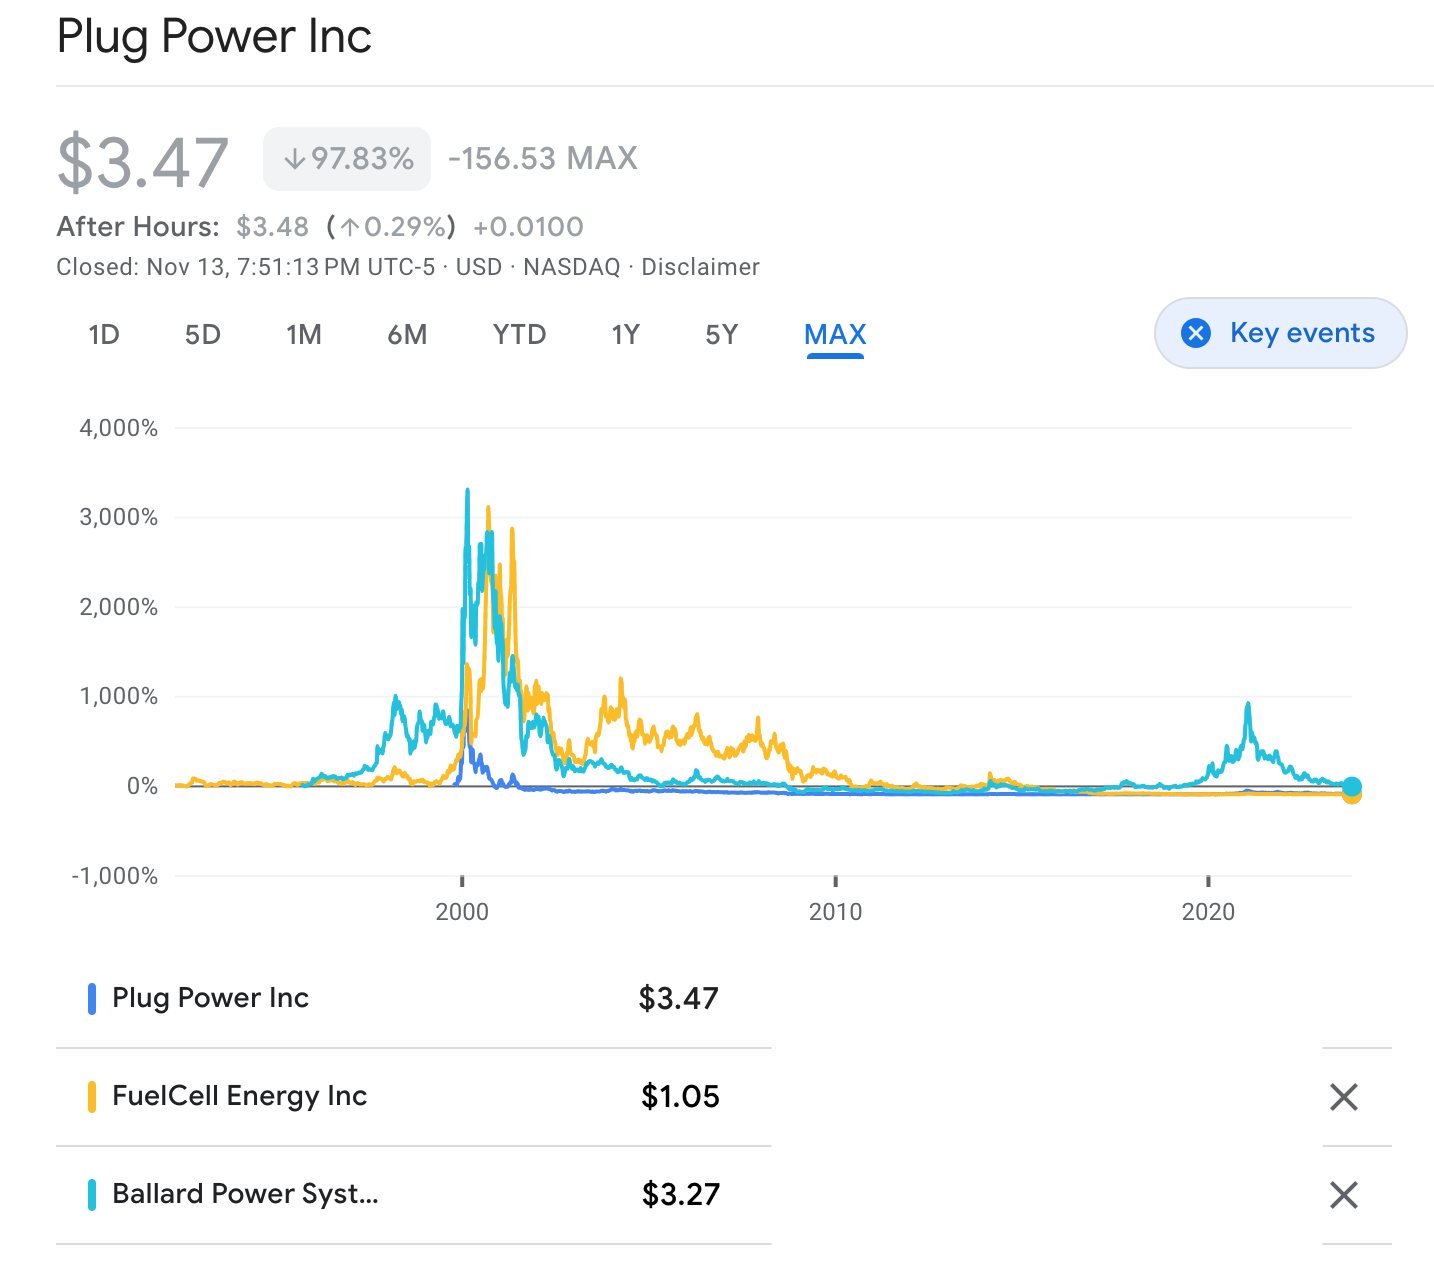 自 Google 首次推出以来，Plug Power、巴拉德和燃料电池能源股票的比较